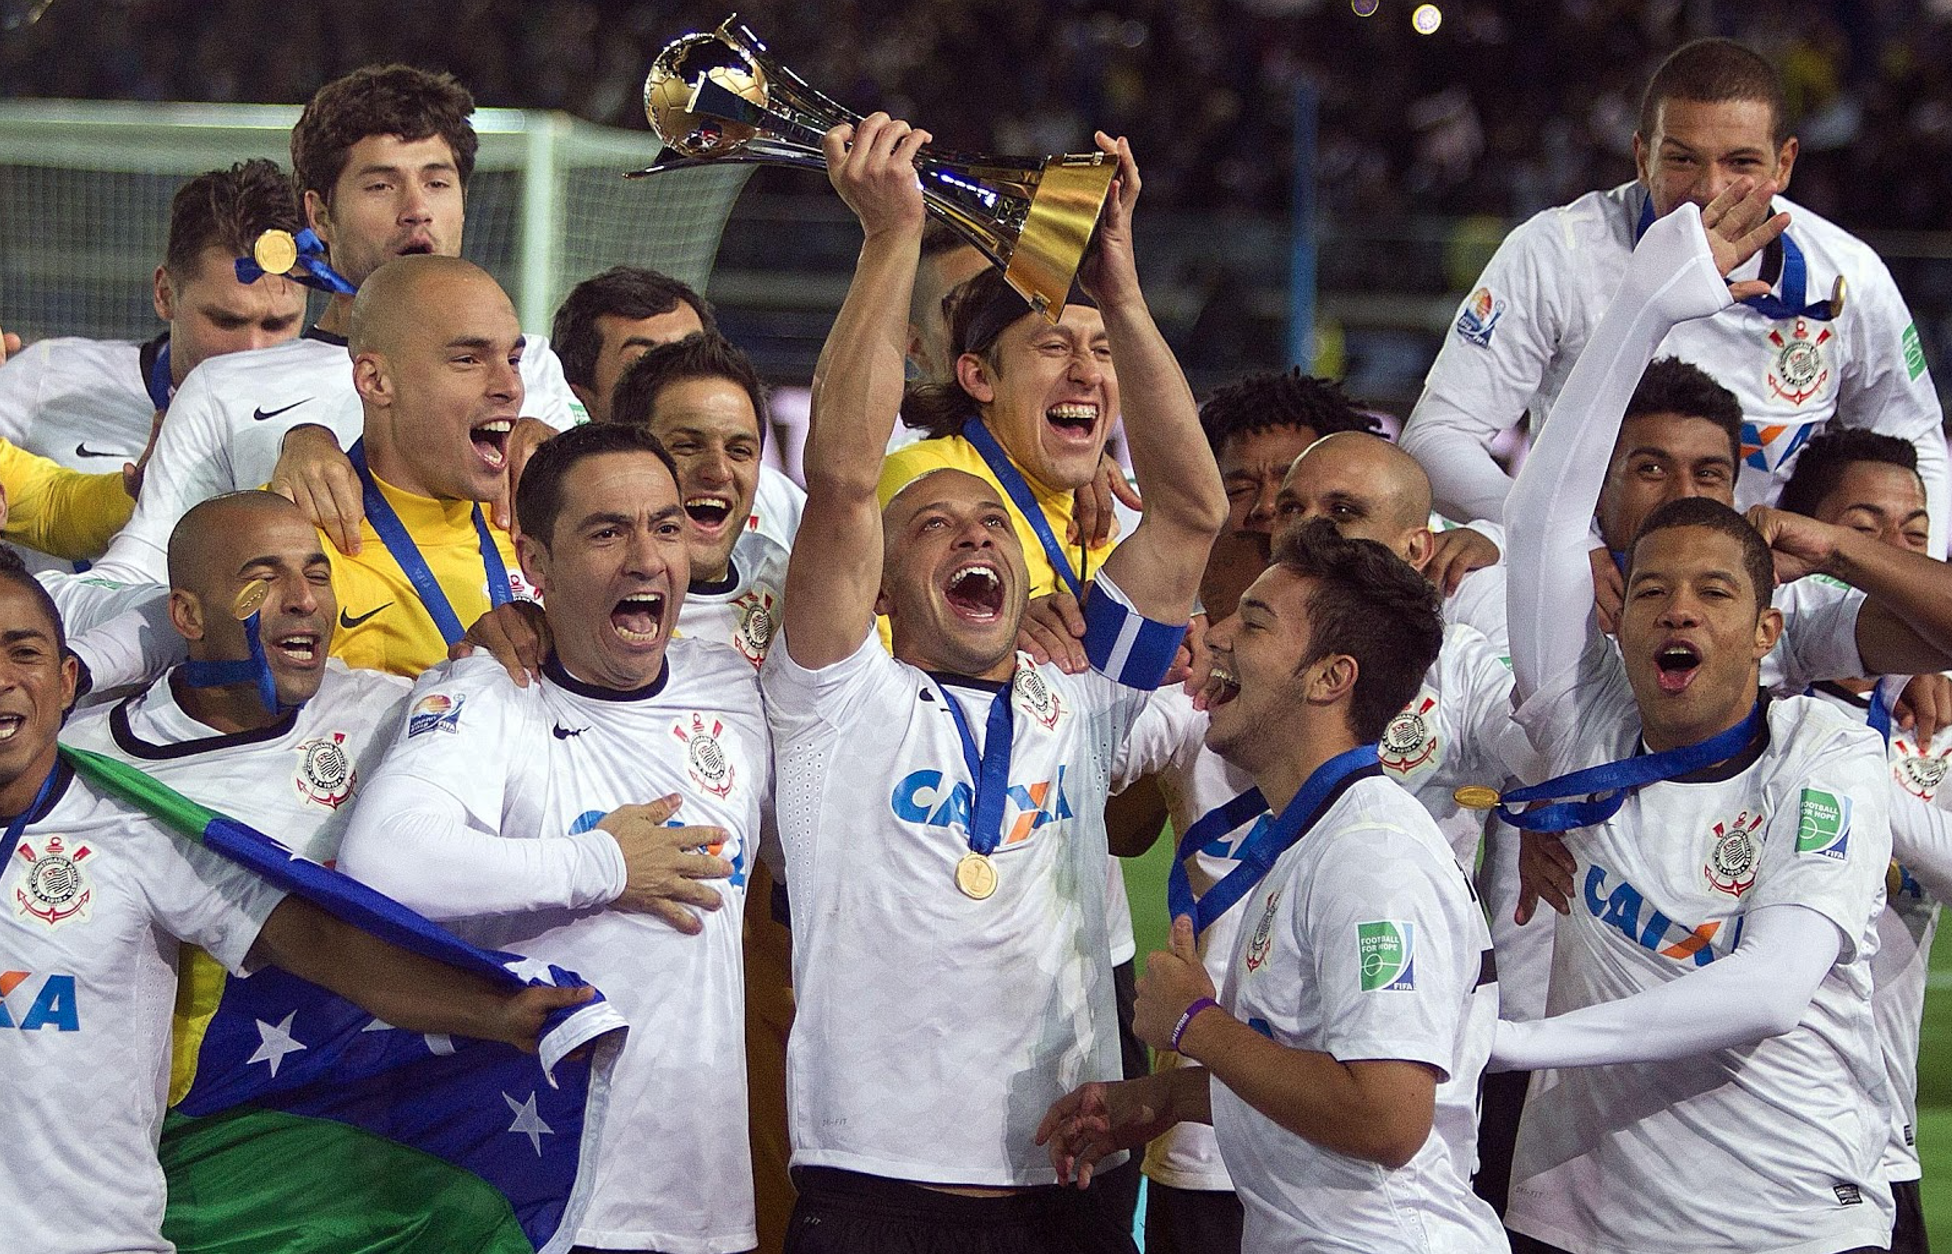 Corinthians conquistava o mundo pela segunda vez, há oito anos